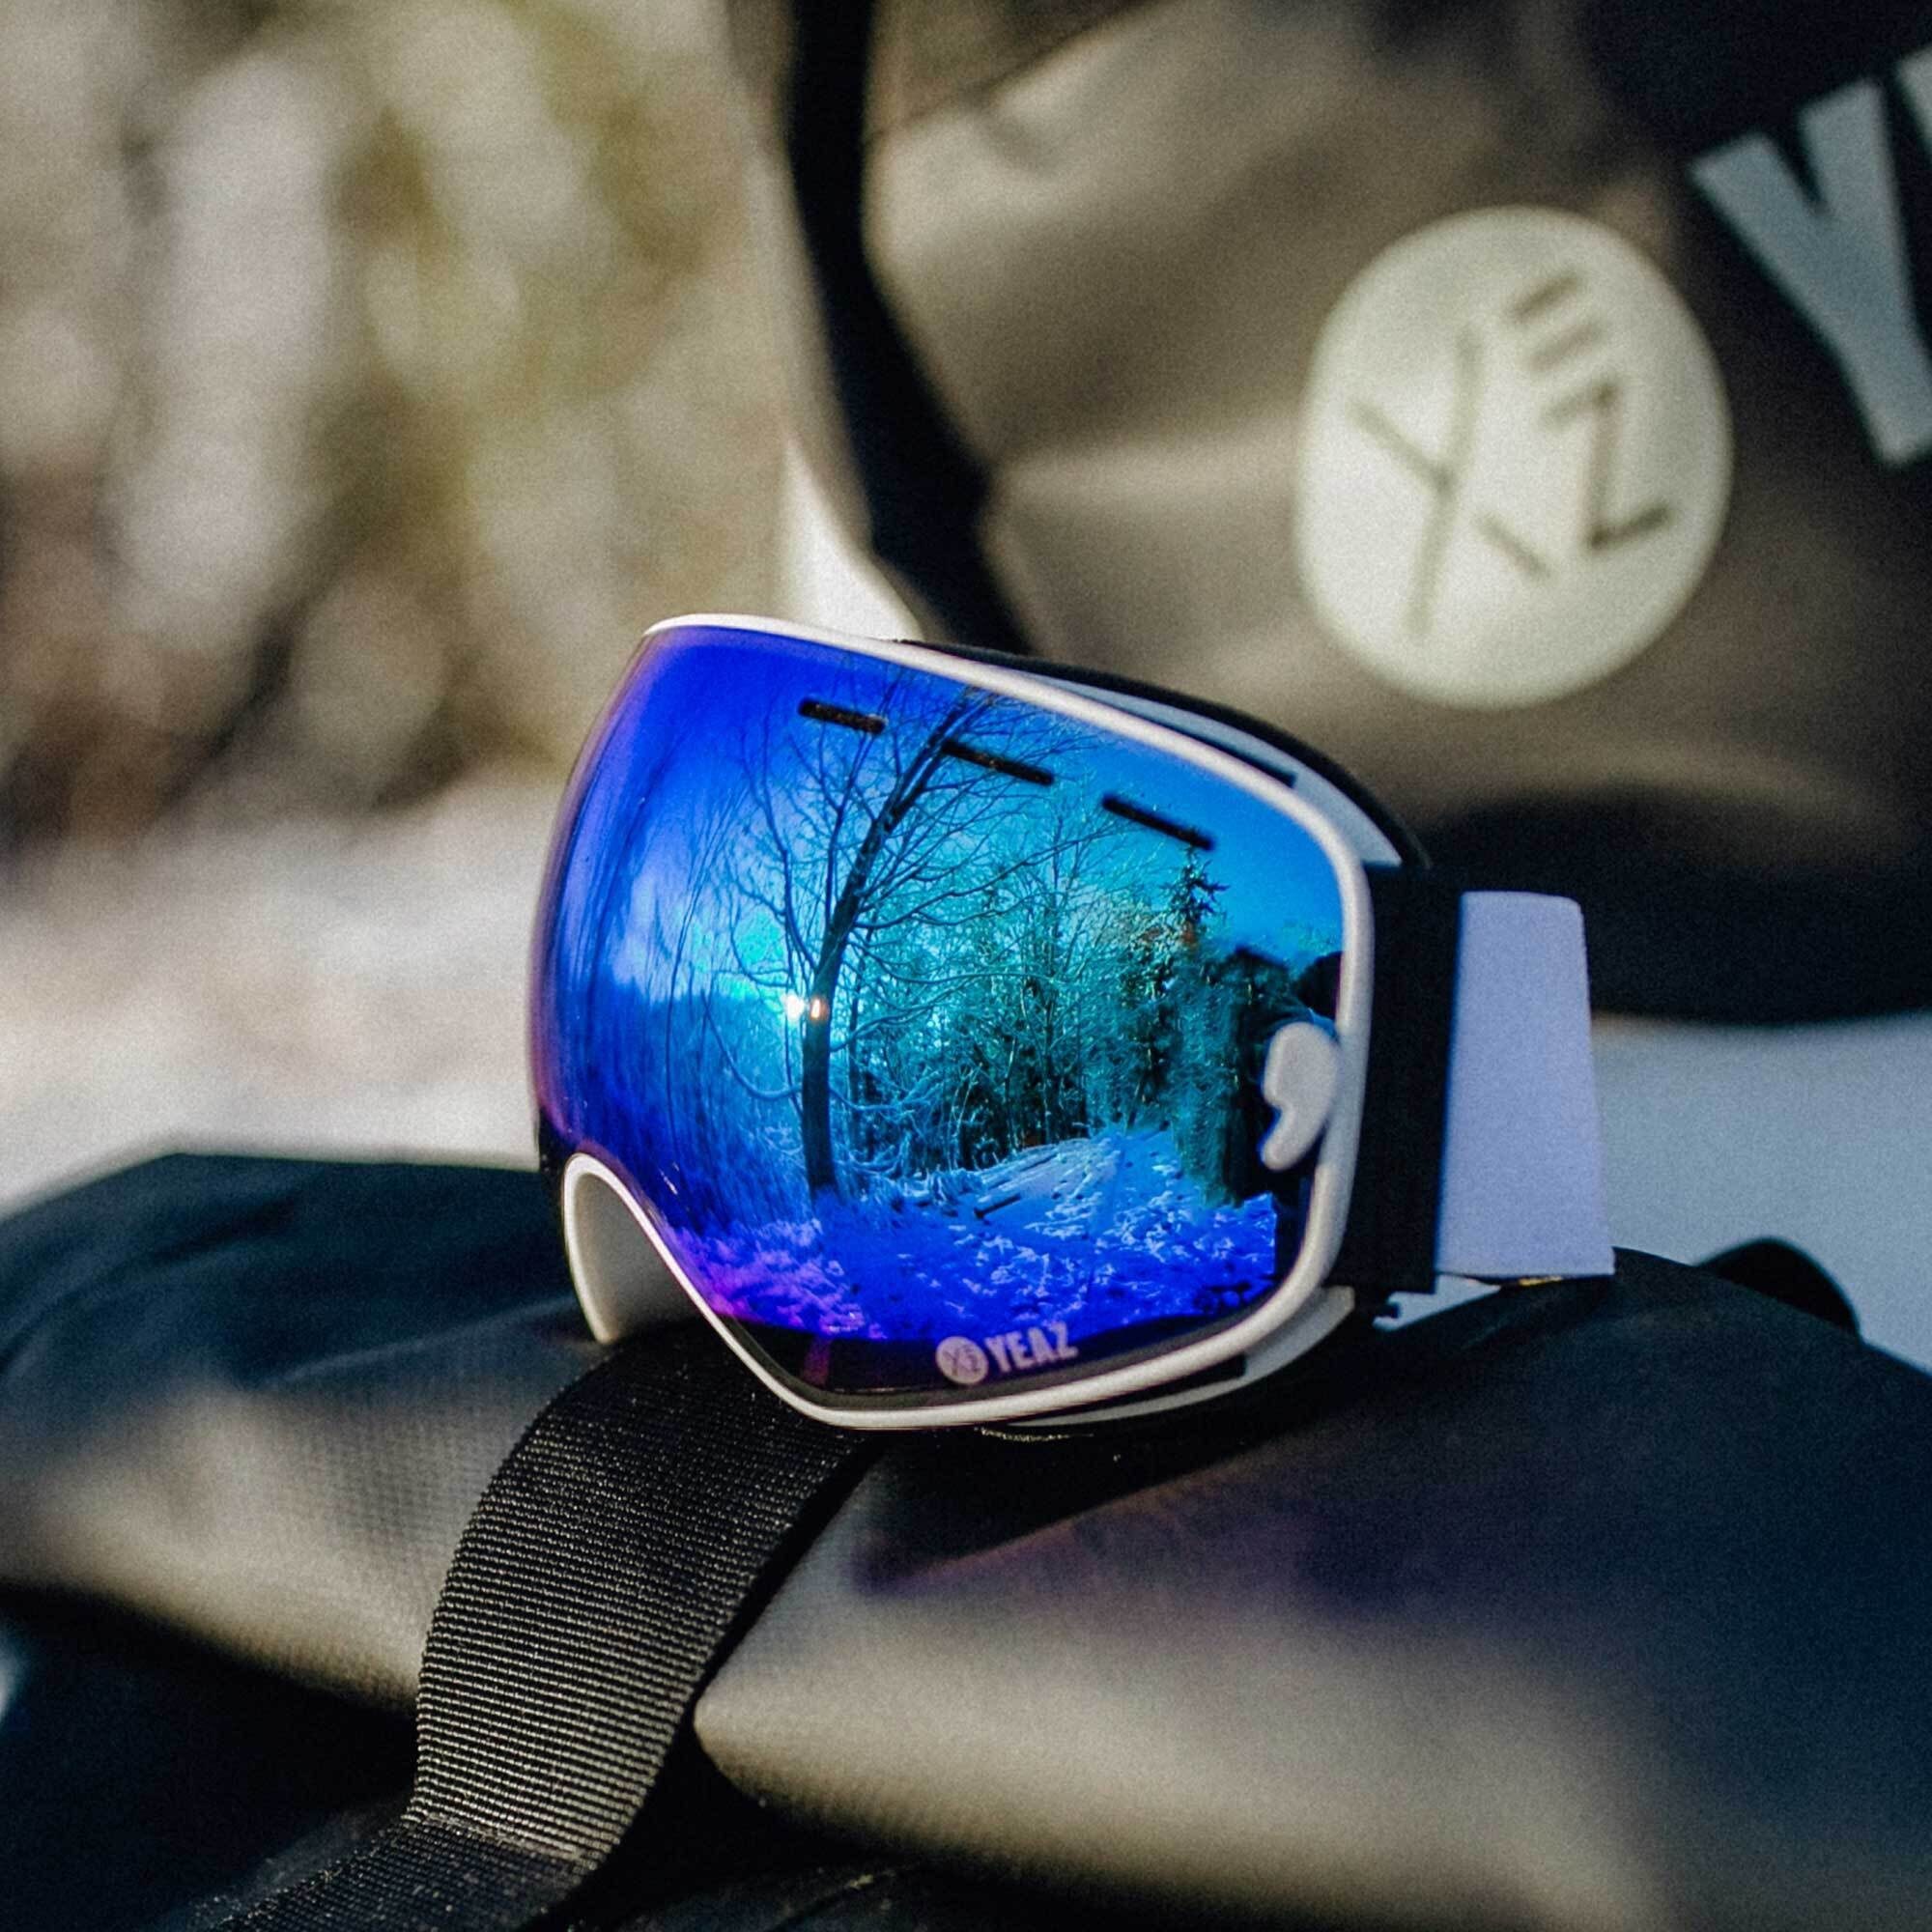 und Jugendliche Snowboardbrille Erwachsene Skibrille für Premium-Ski- und YEAZ XTRM-SUMMIT,